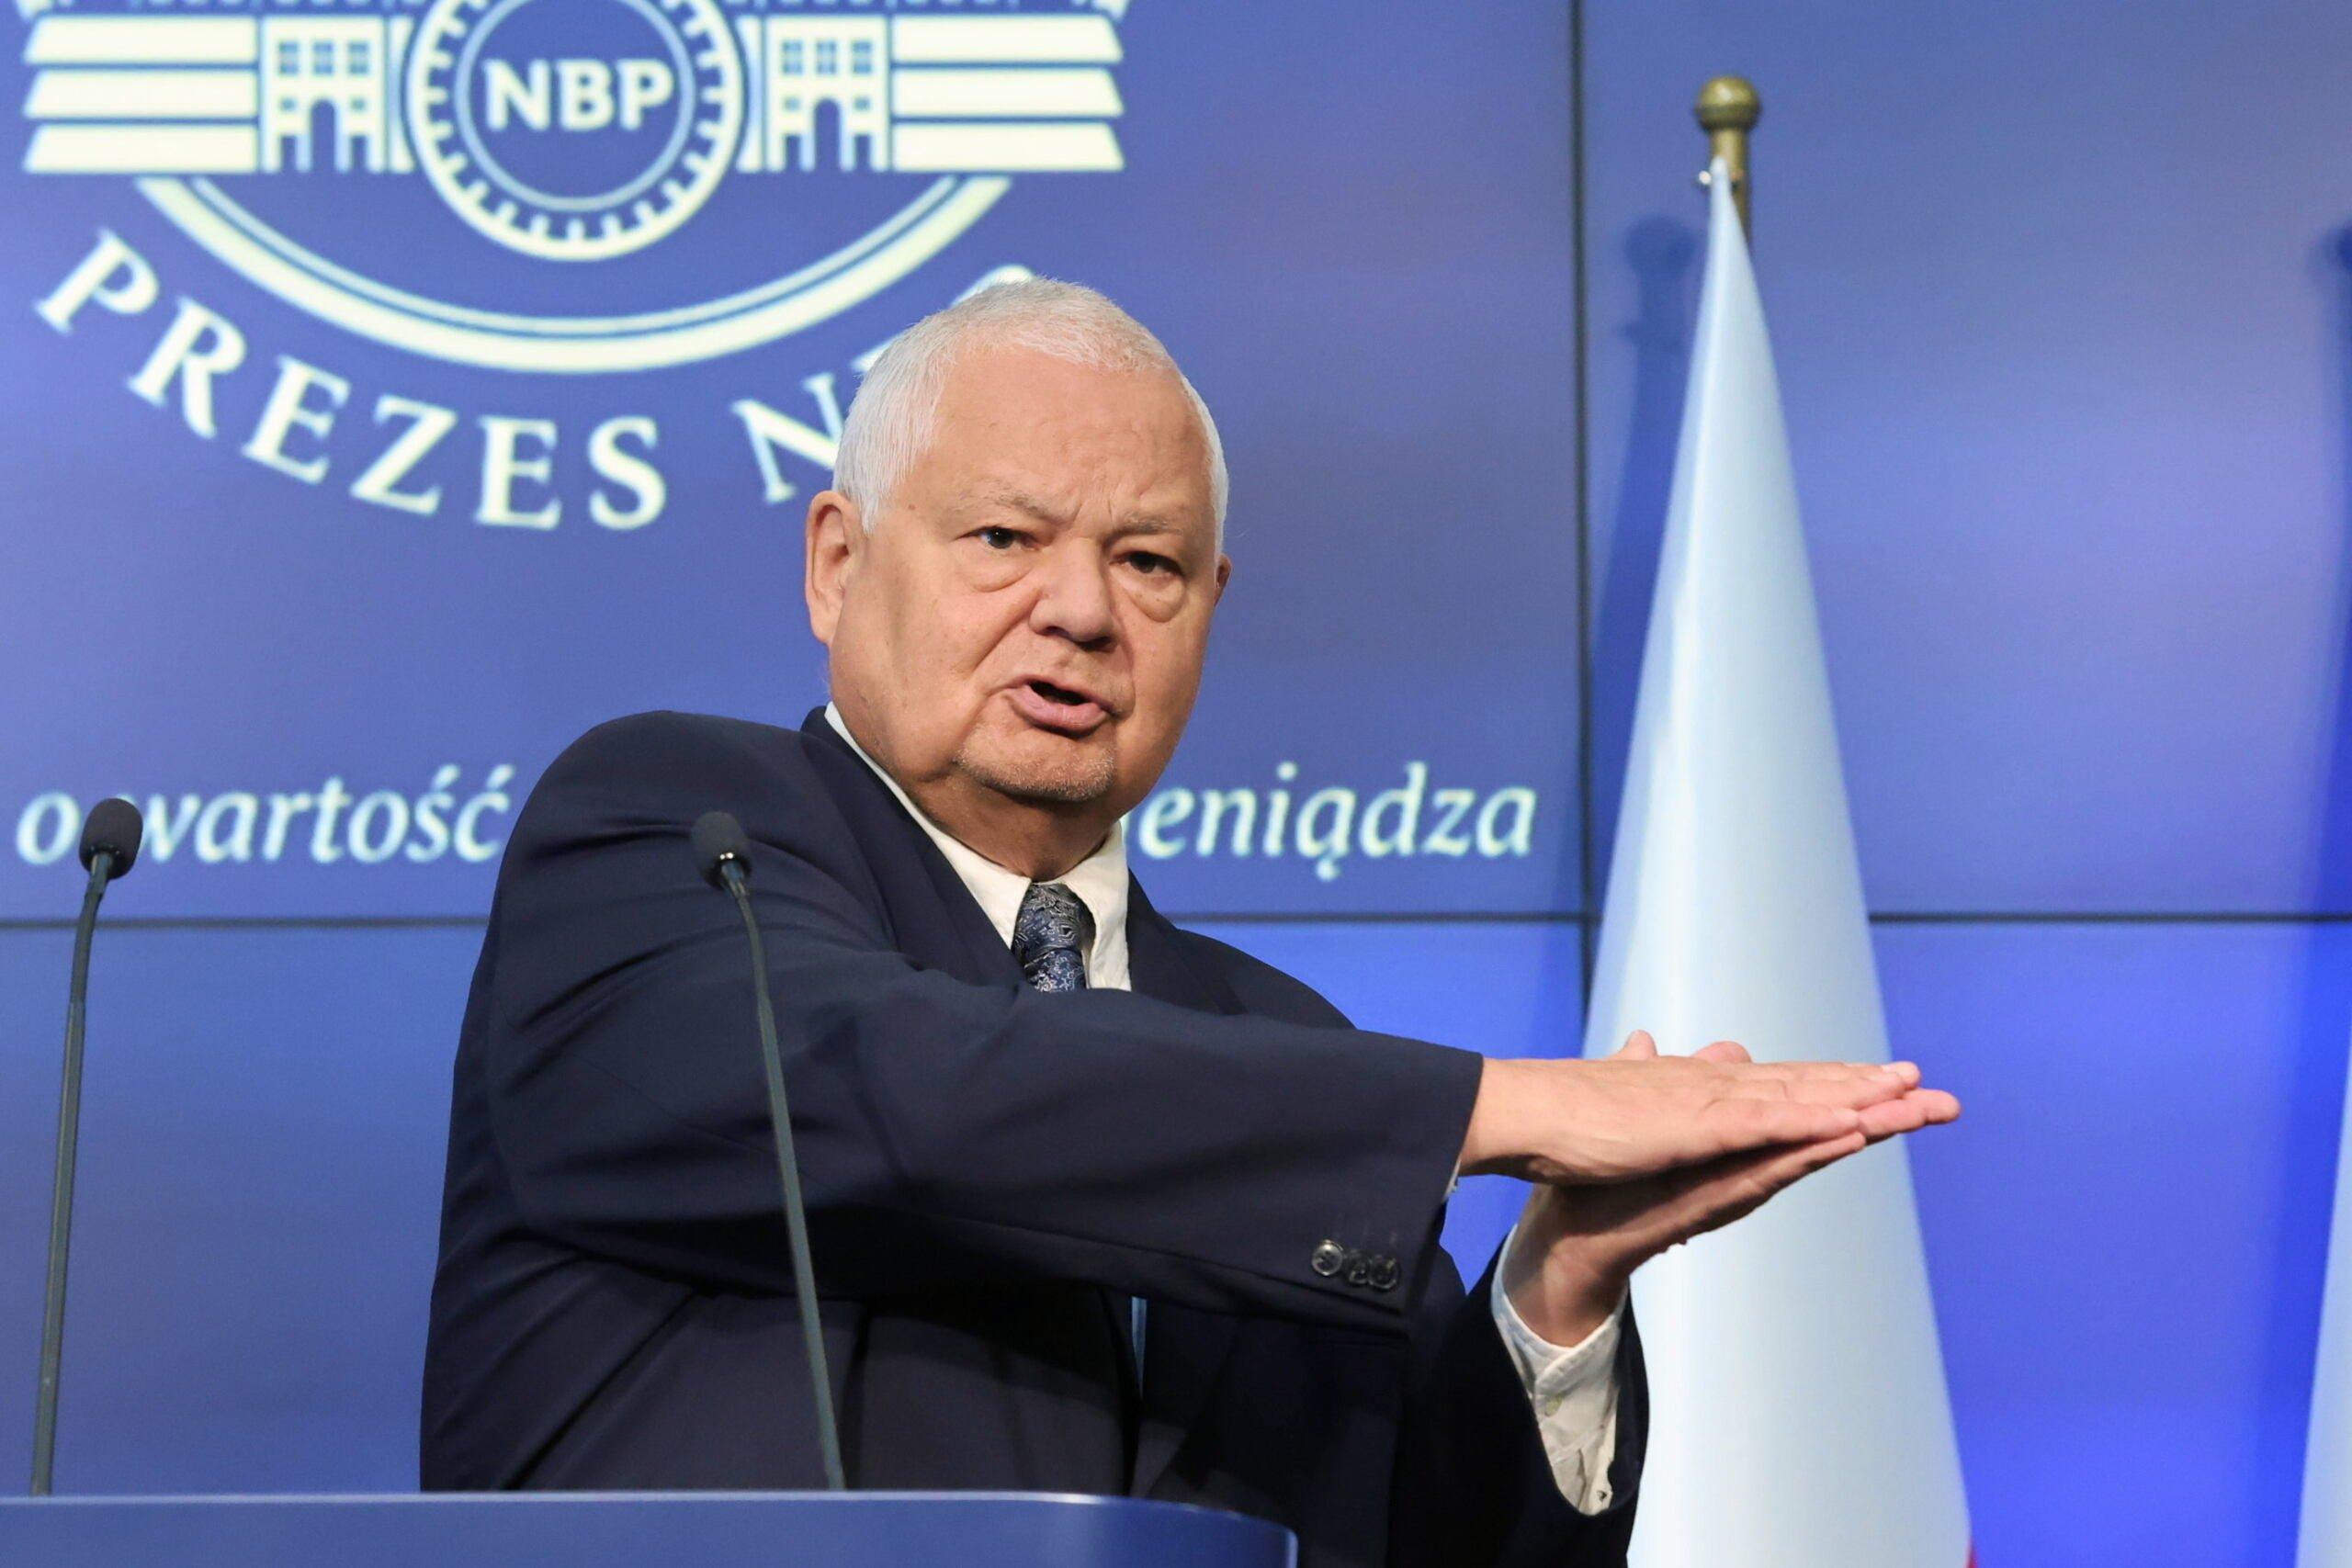 Prezes NBP Adam Glapiński podczas konferencji prasowej w siedzibie NBP na tle niebieskiego ekranu